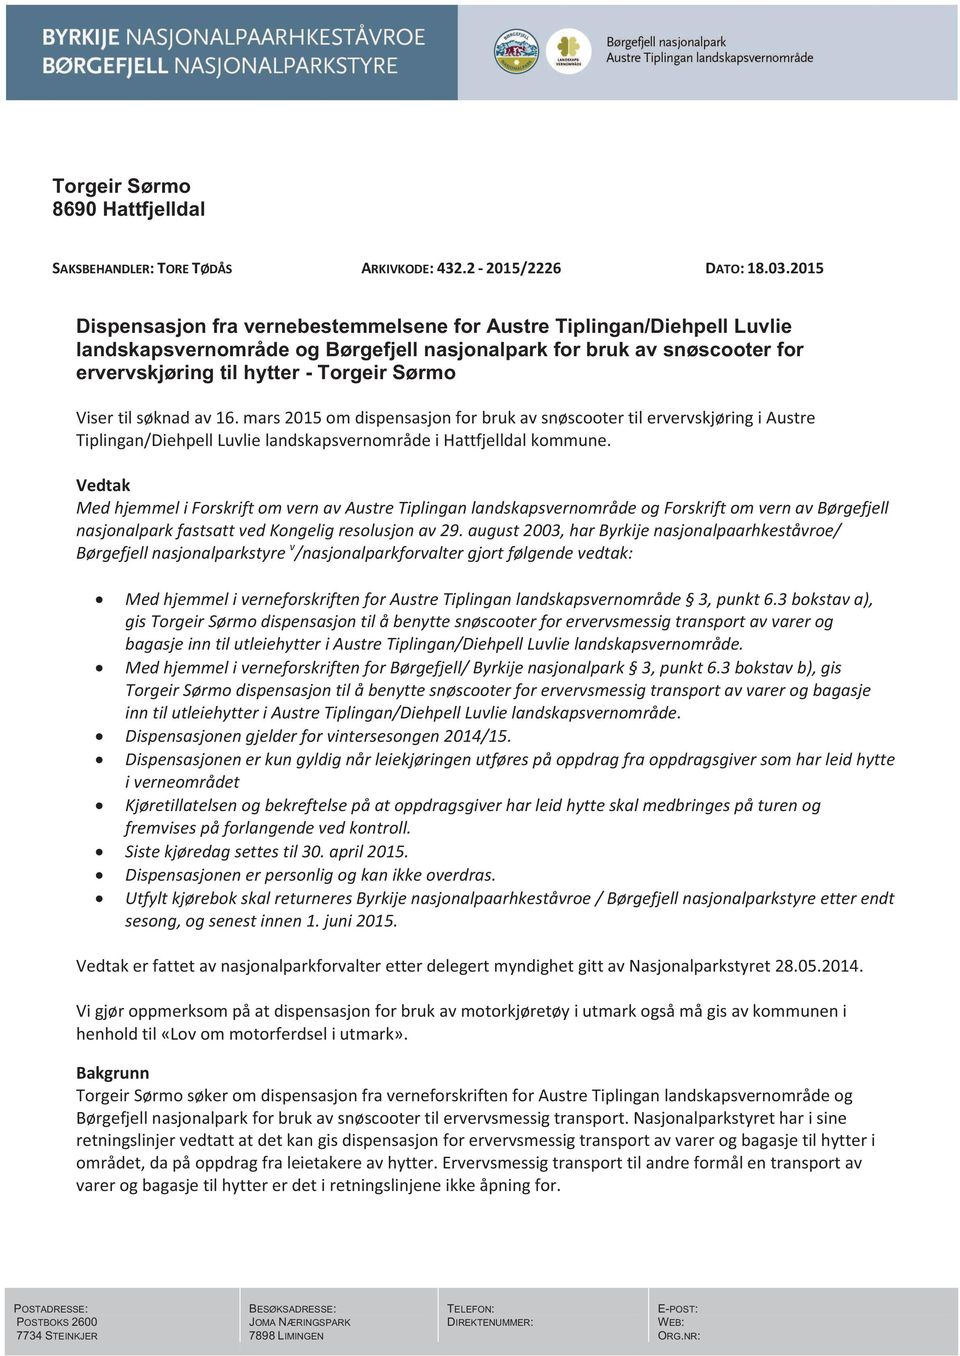 til søknad av 16. mars 2015 om dispensasjon for bruk av snøscooter til ervervskjøring i Austre Tiplingan/Diehpell Luvlie landskapsvernområde i Hattfjelldal kommune.